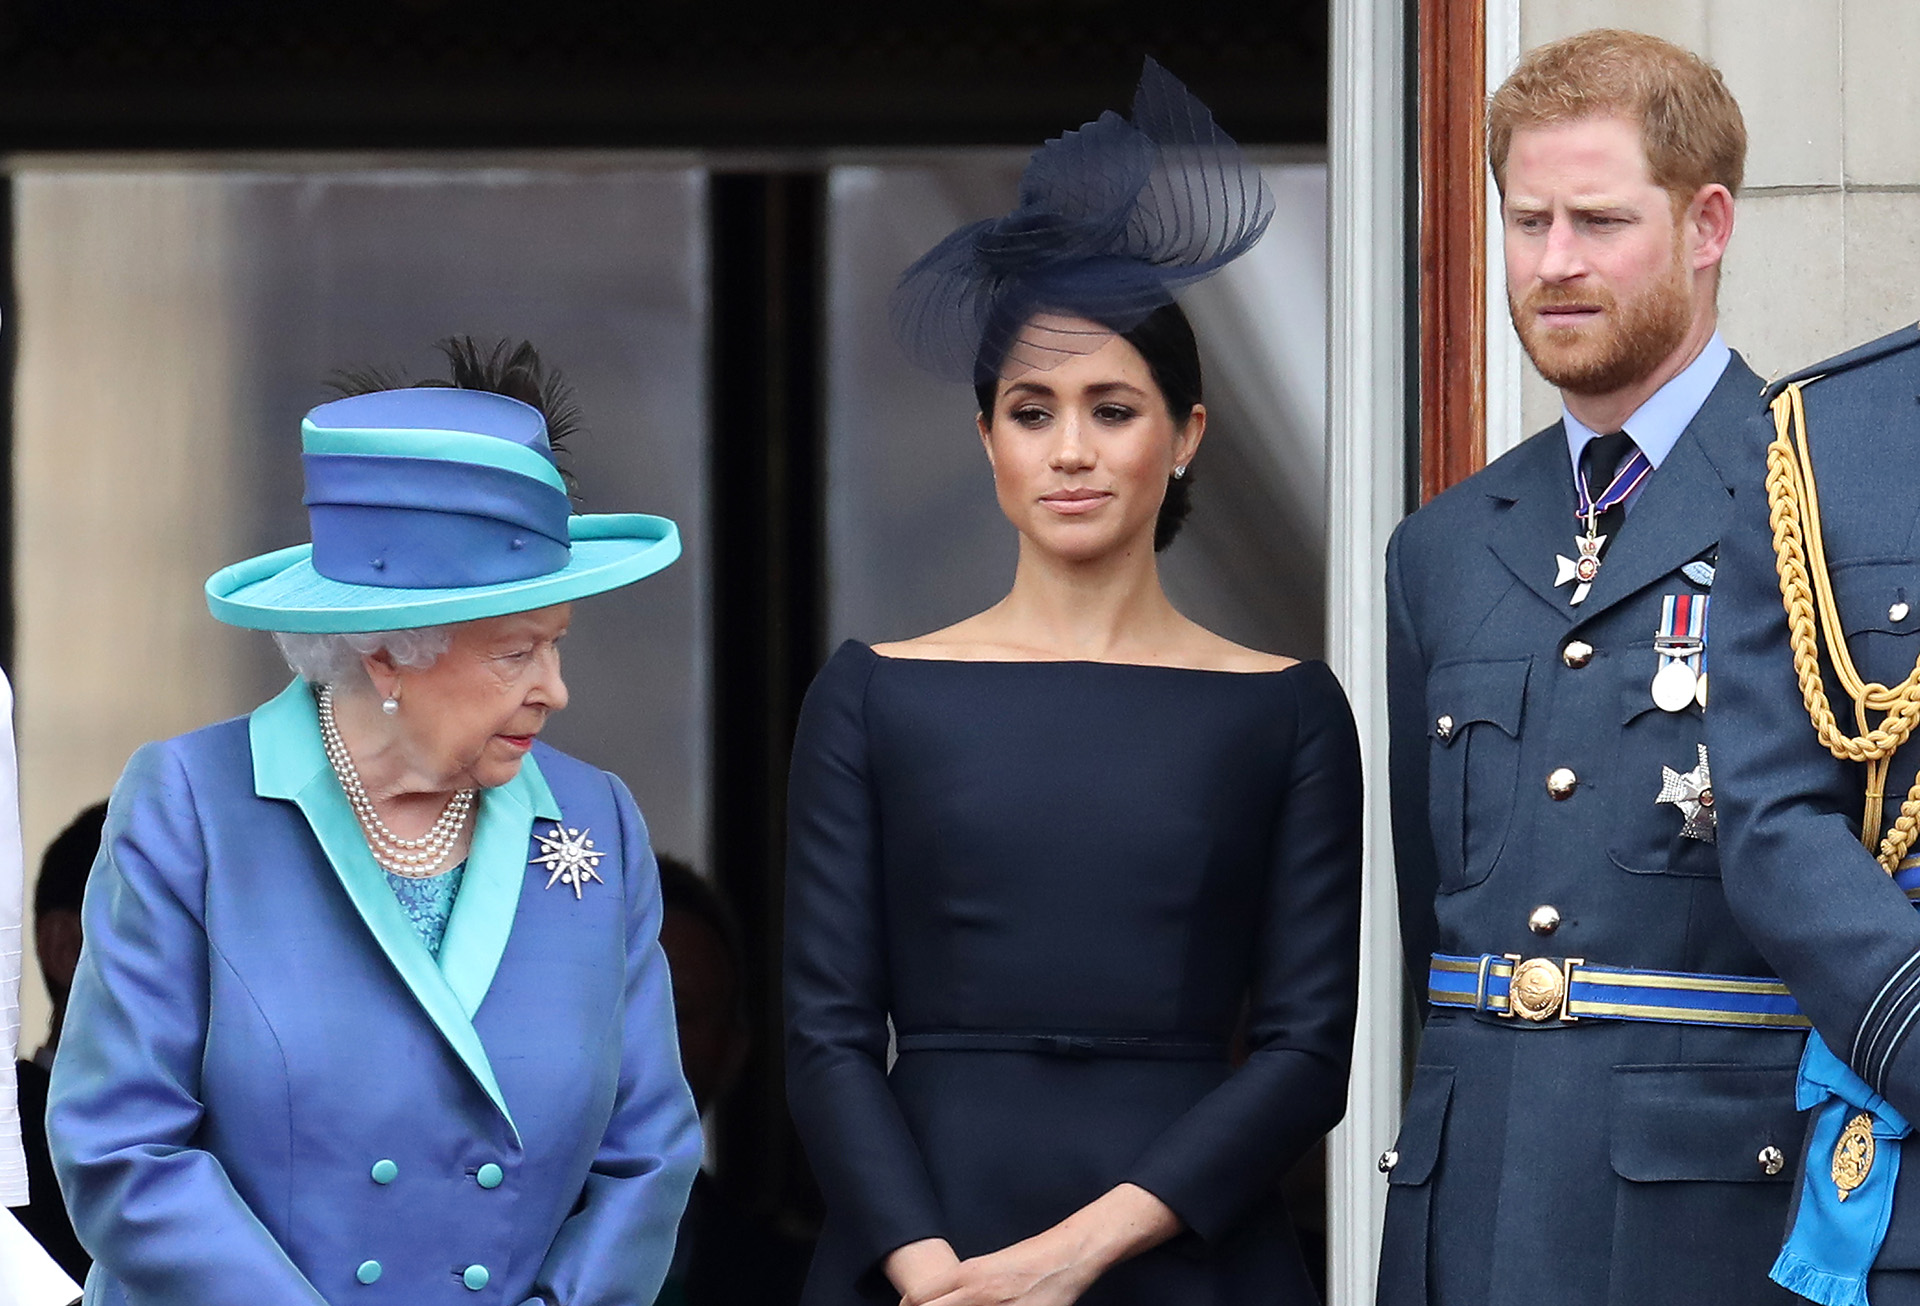 La reina Isabel II, el príncipe Harry, duque de Sussex y Meghan, duquesa de Sussex en el balcón del Palacio de Buckingham mientras la familia real asiste a los eventos para conmemorar el centenario de la RAF el 10 de julio de 2018 en Londres, Inglaterra. (Foto de Chris Jackson/Getty Images)